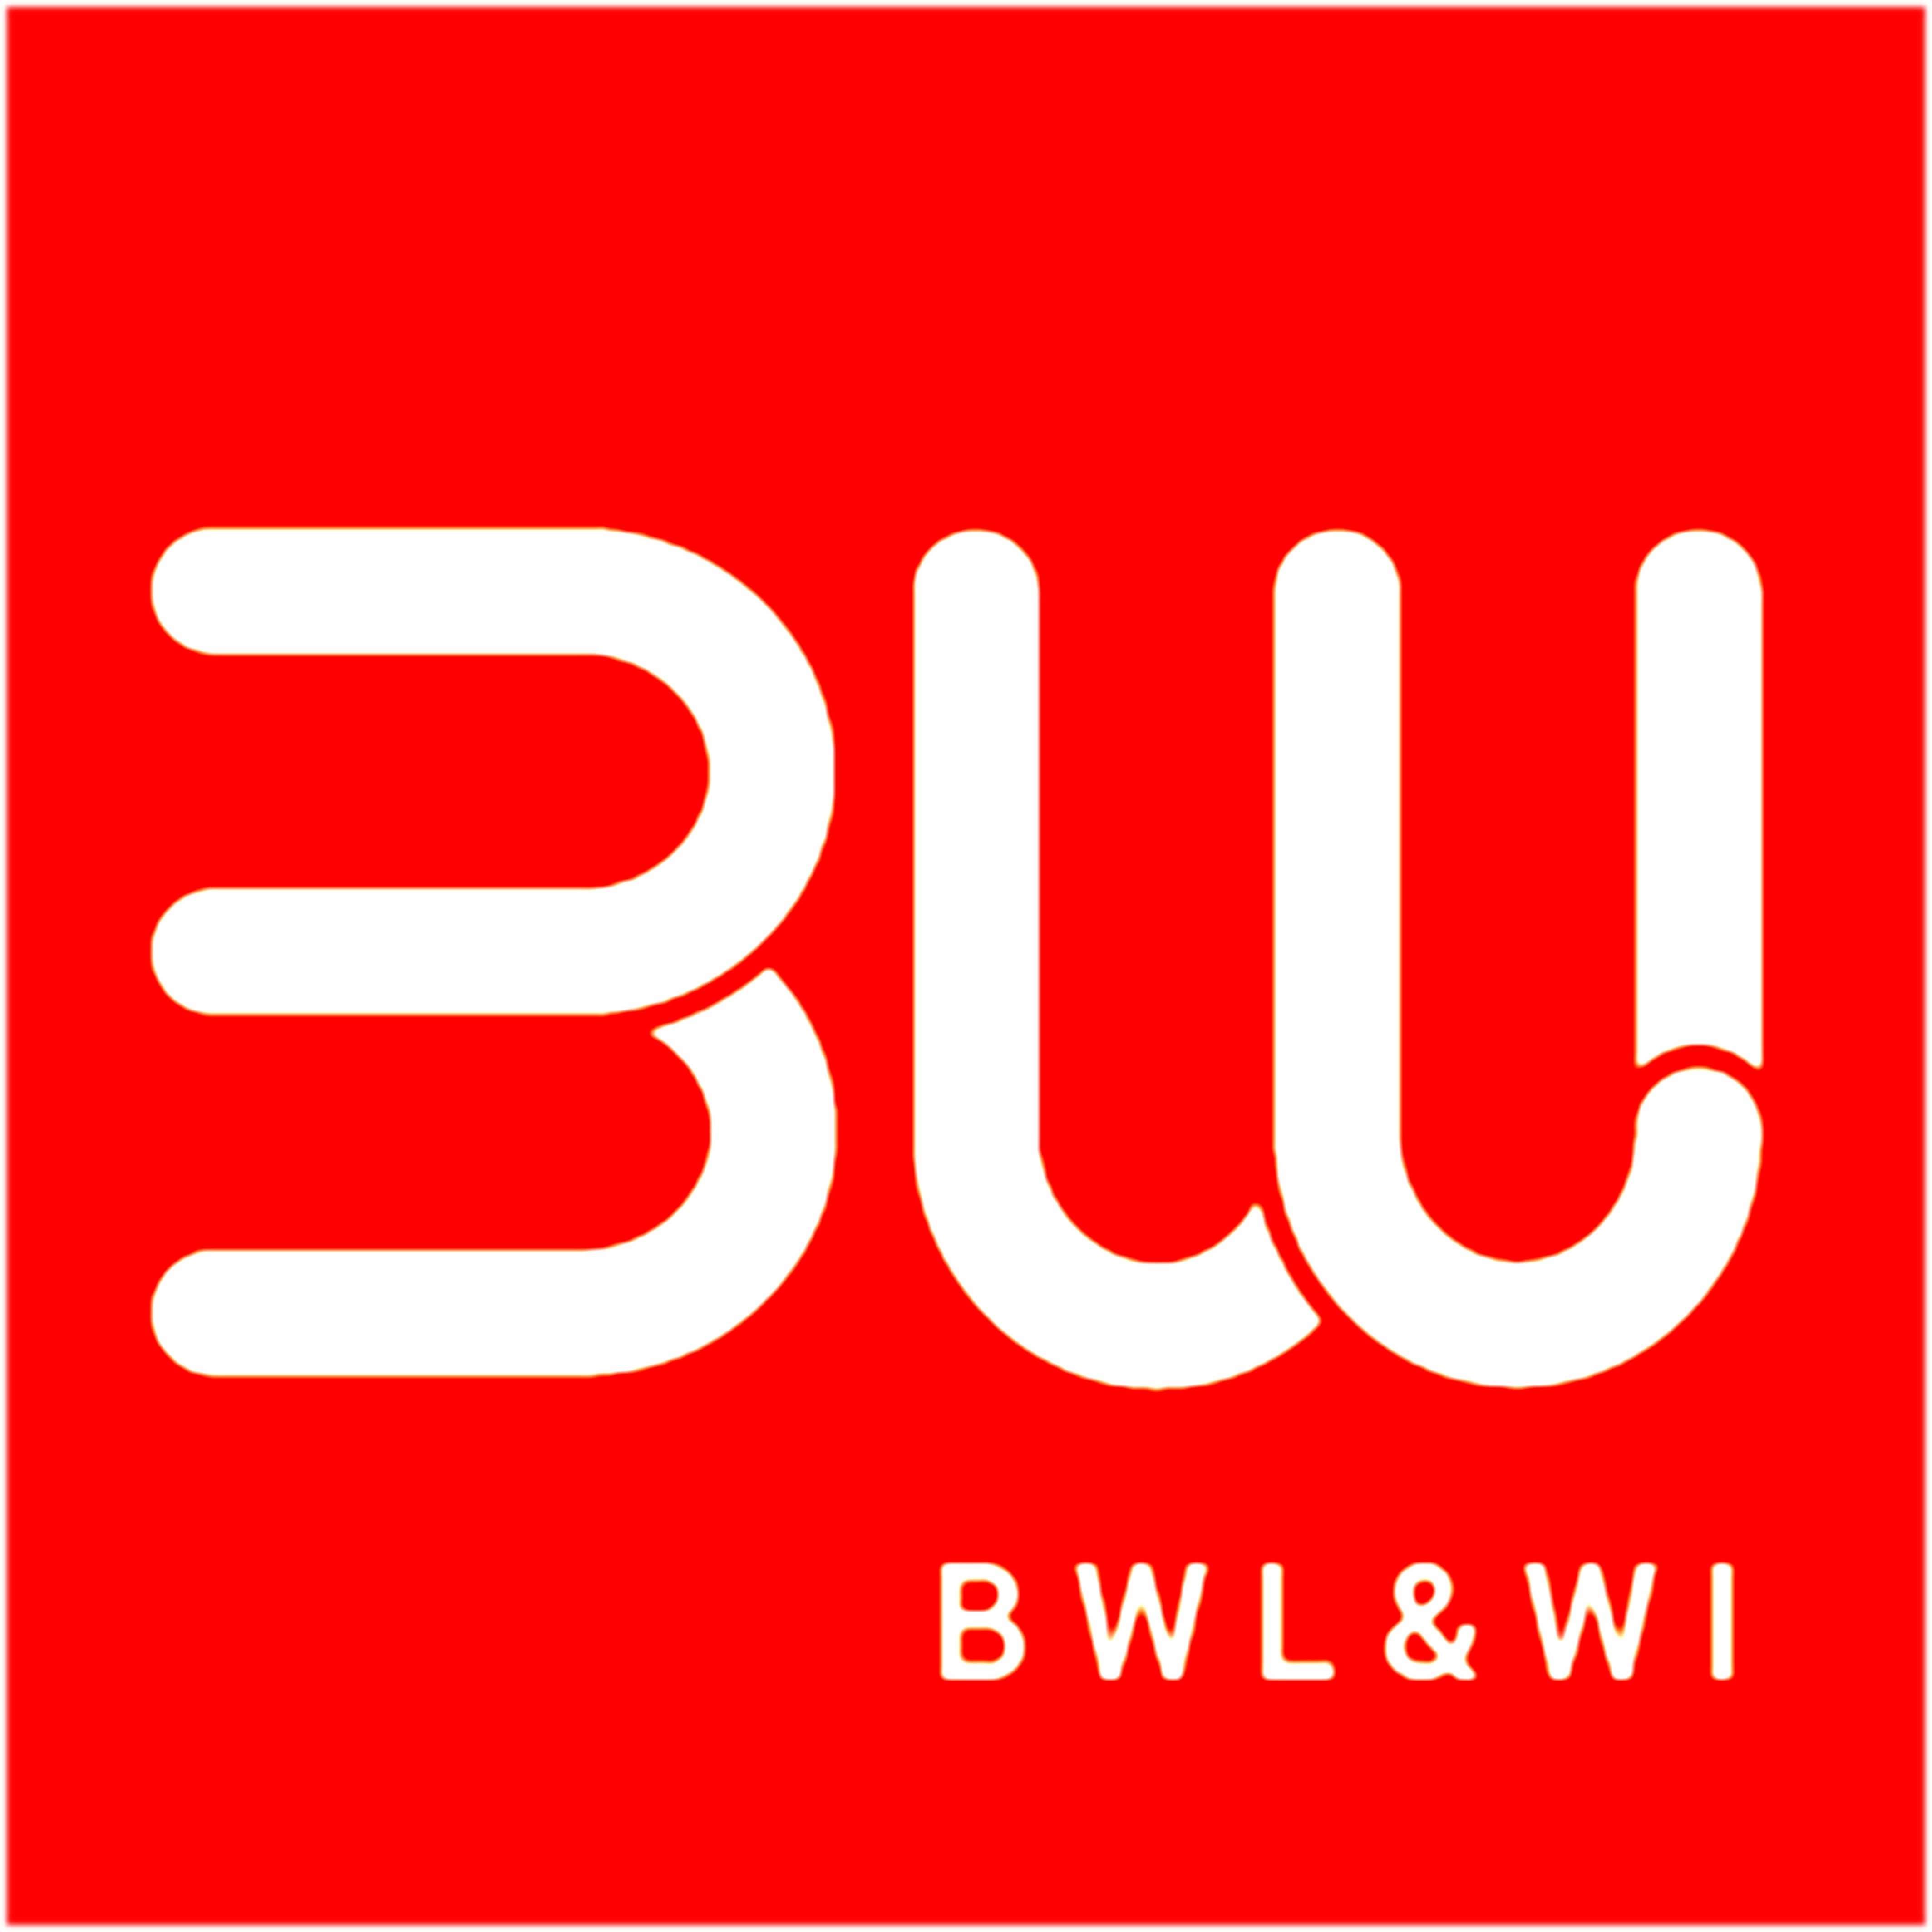 BWL_WI.jpg (159 KB)